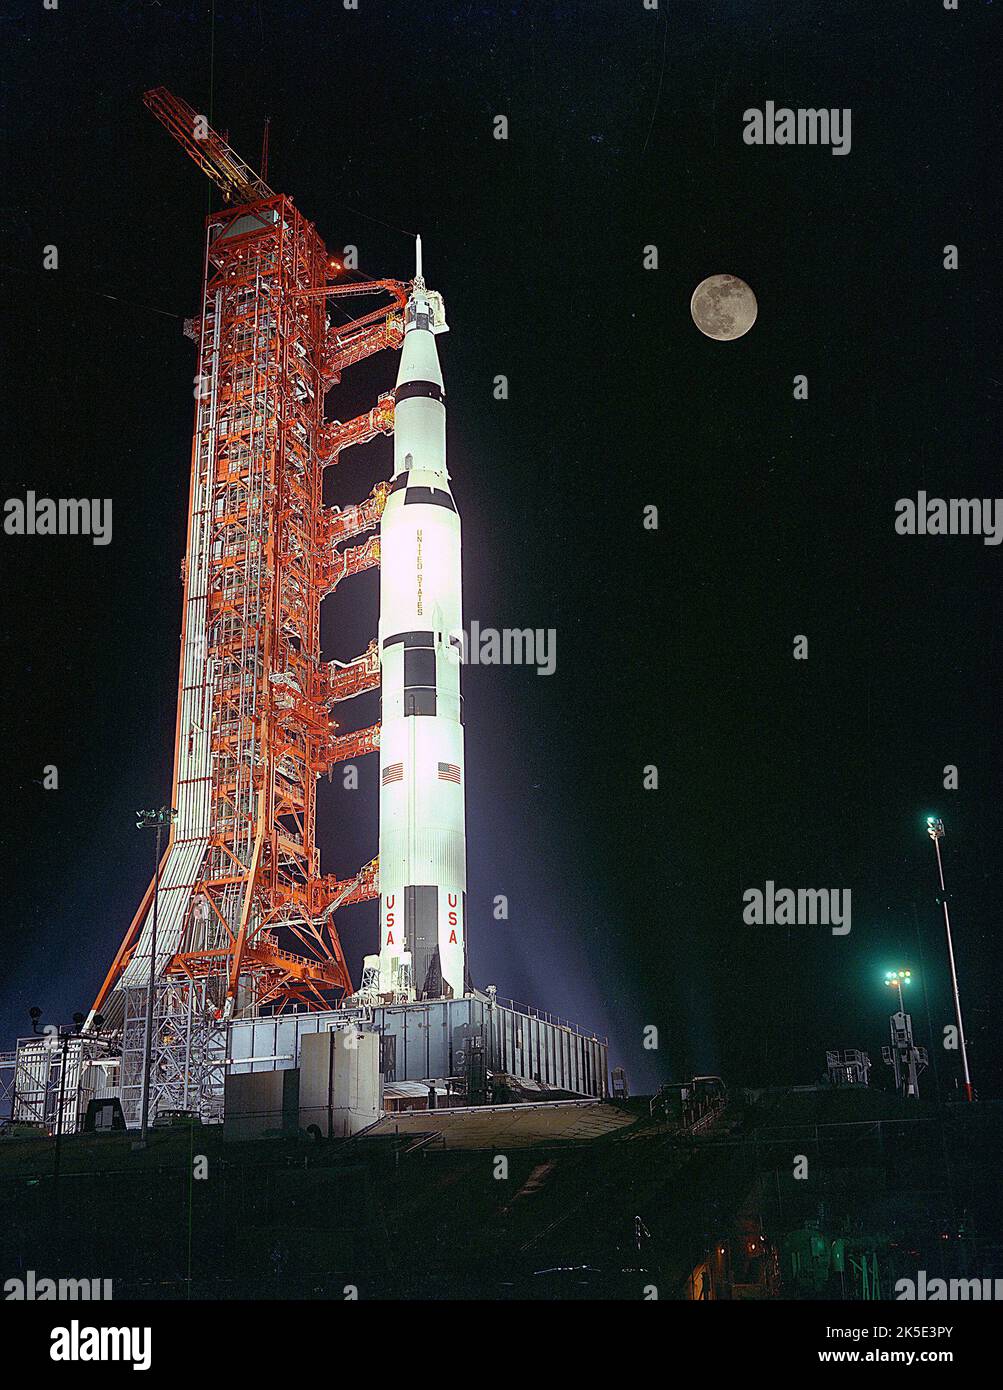 Saturn V auf dem Launch Pad. Die Apollo 17 Saturn V-Trägerrakete stand unter einem Vollmond auf dem Launch Pad 39A im Kennedy Space Center, Florida. Countdown für den Start läuft. Ein optimiertes NASA-Bild: Quelle: NASA Stockfoto